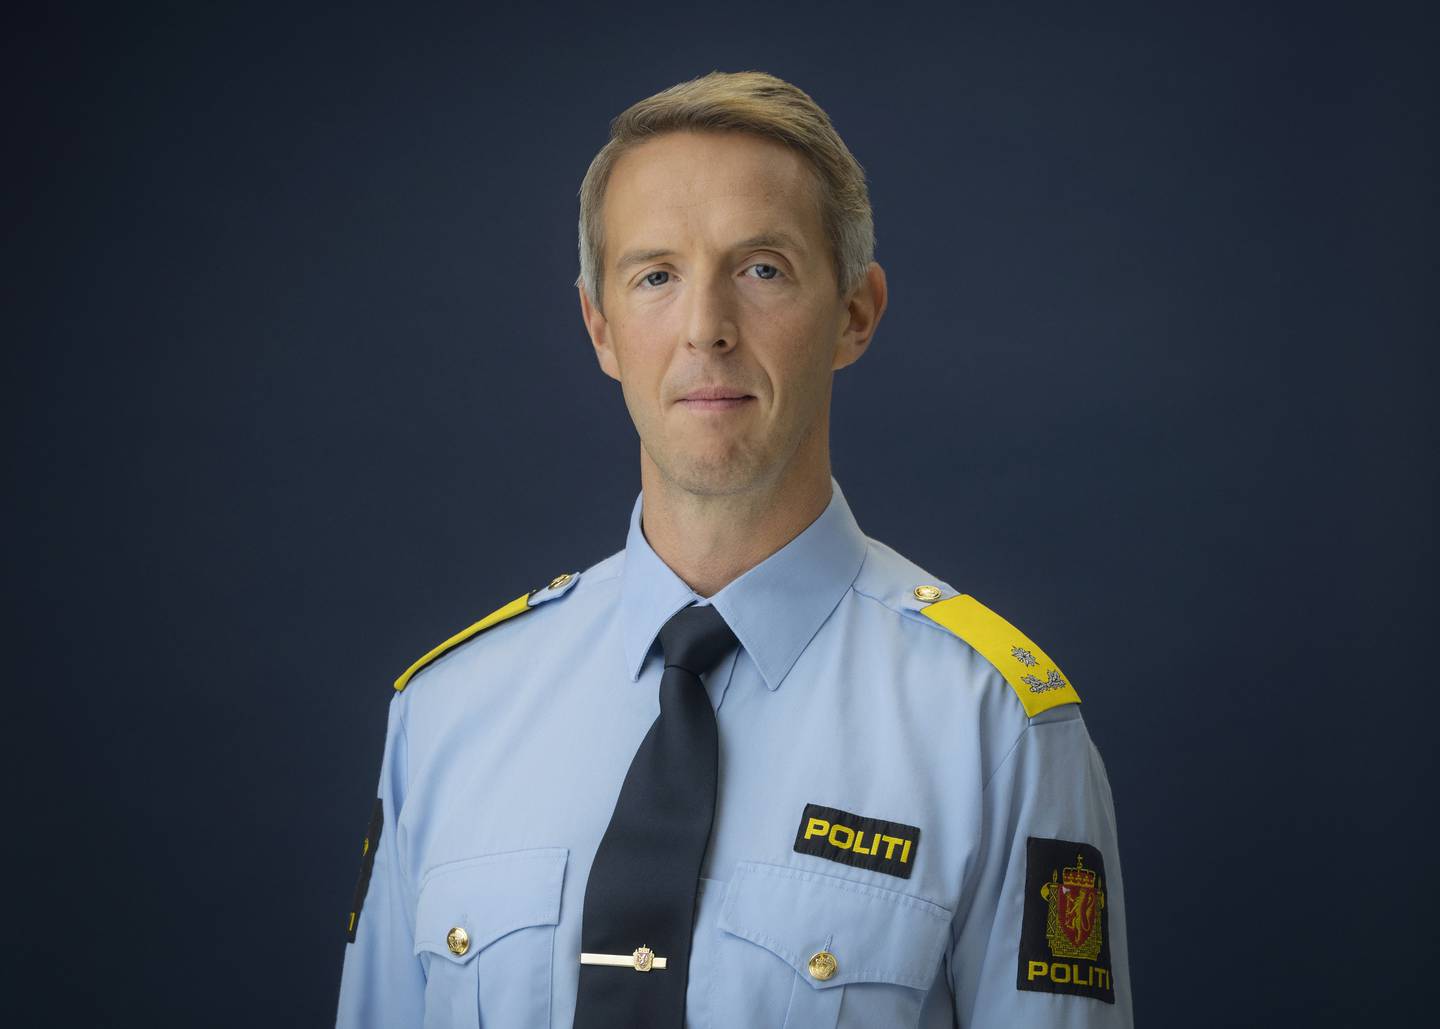 John-Magnus Løkenflaen